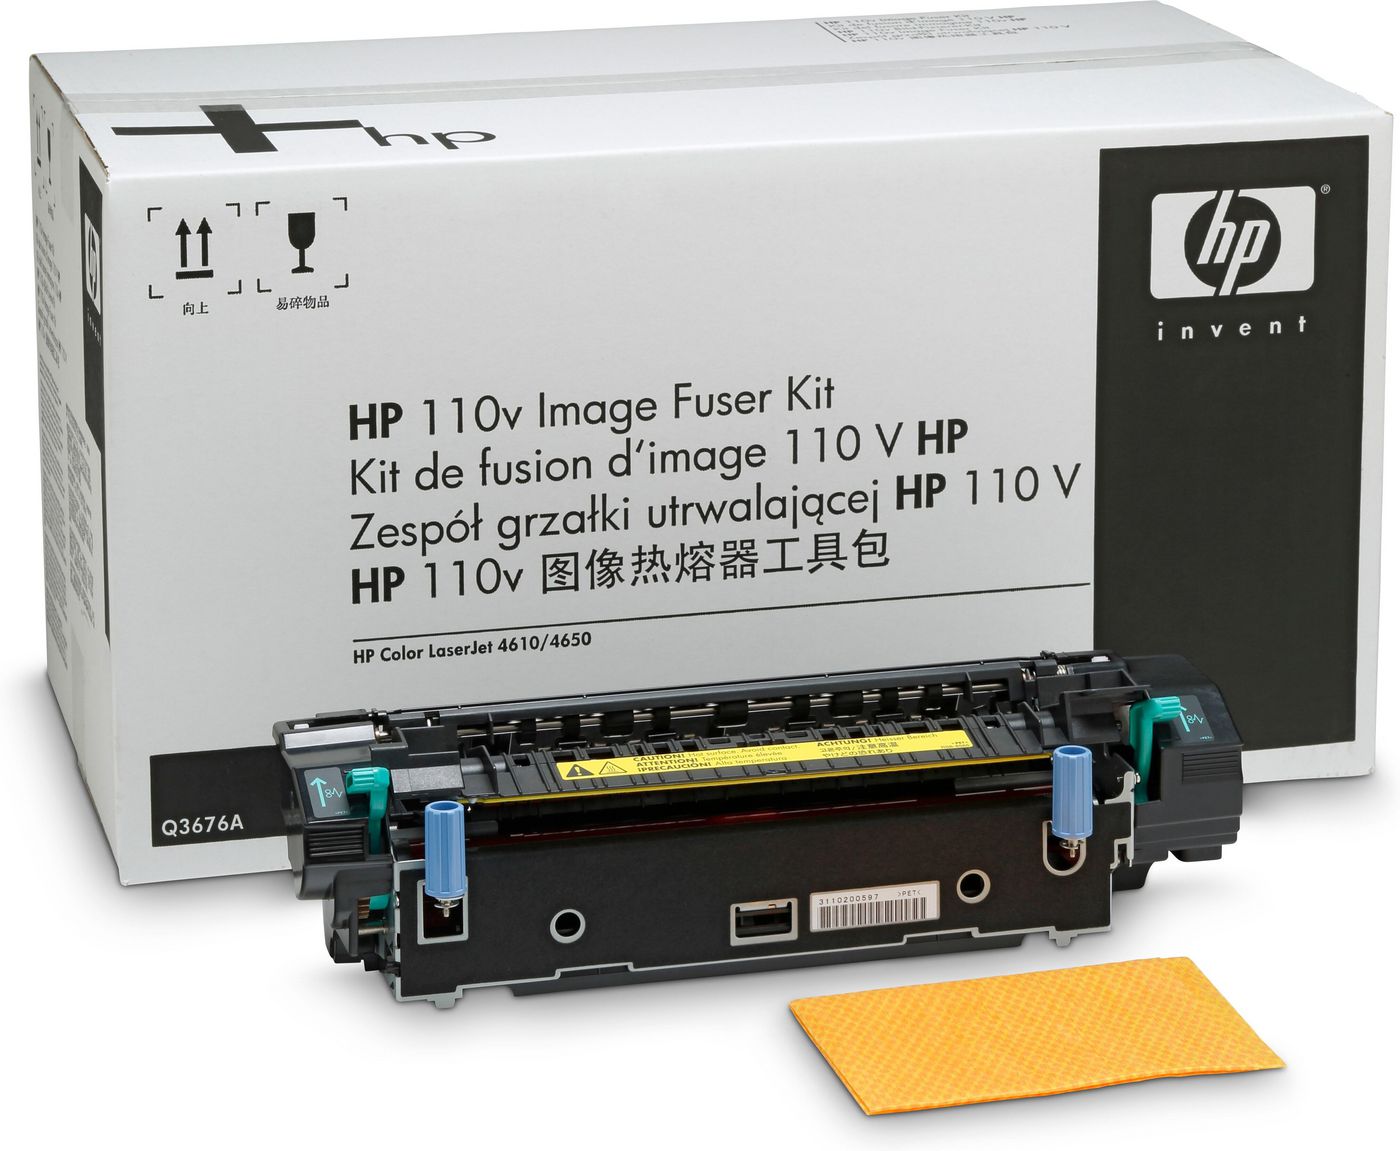 HP Q3676A-RFB 100 Volt Image Fuser Kit 